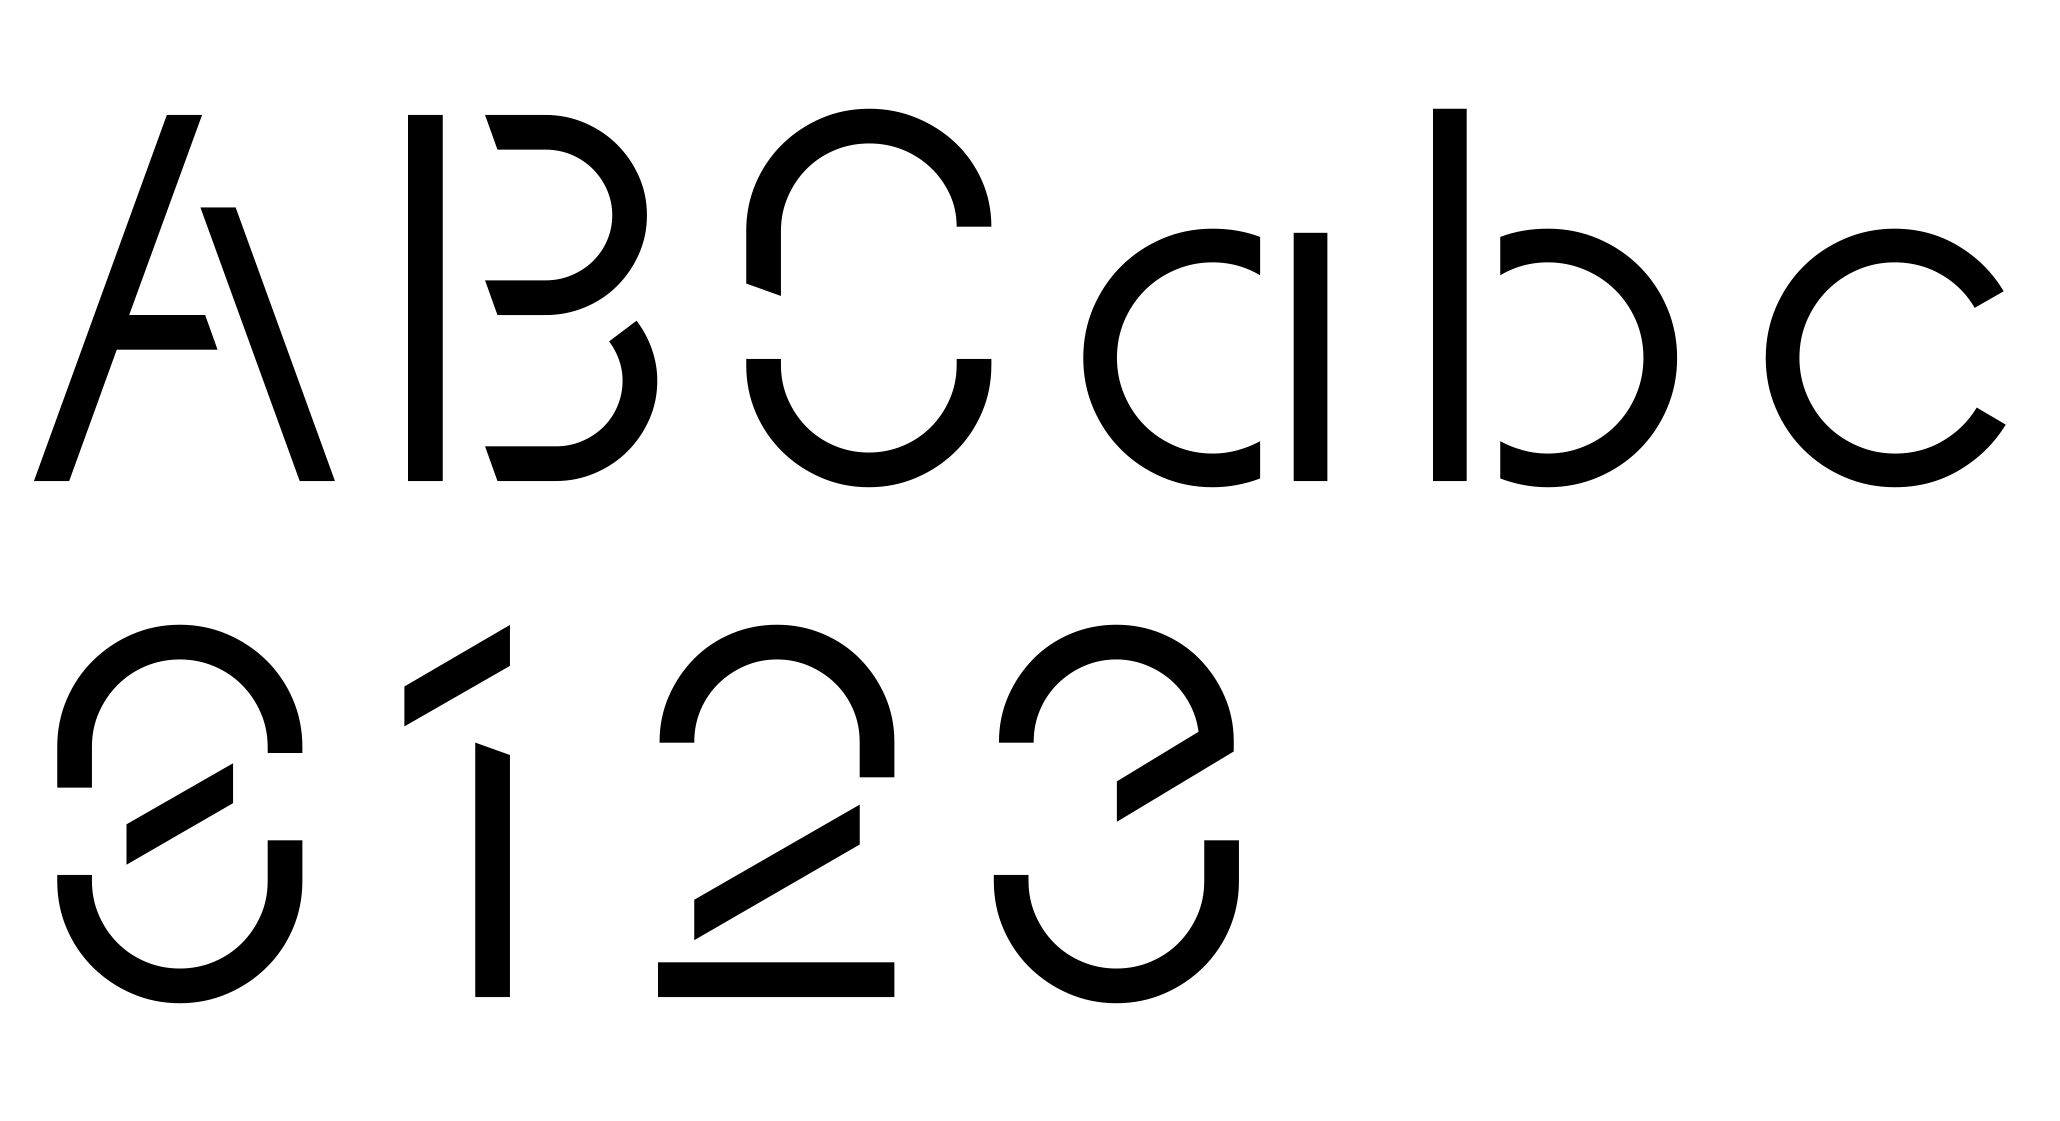 2.Förbundets nya typsnitt, SA Display, är framtaget av Acne tillsammans med typografen Stefan Hattenbach.